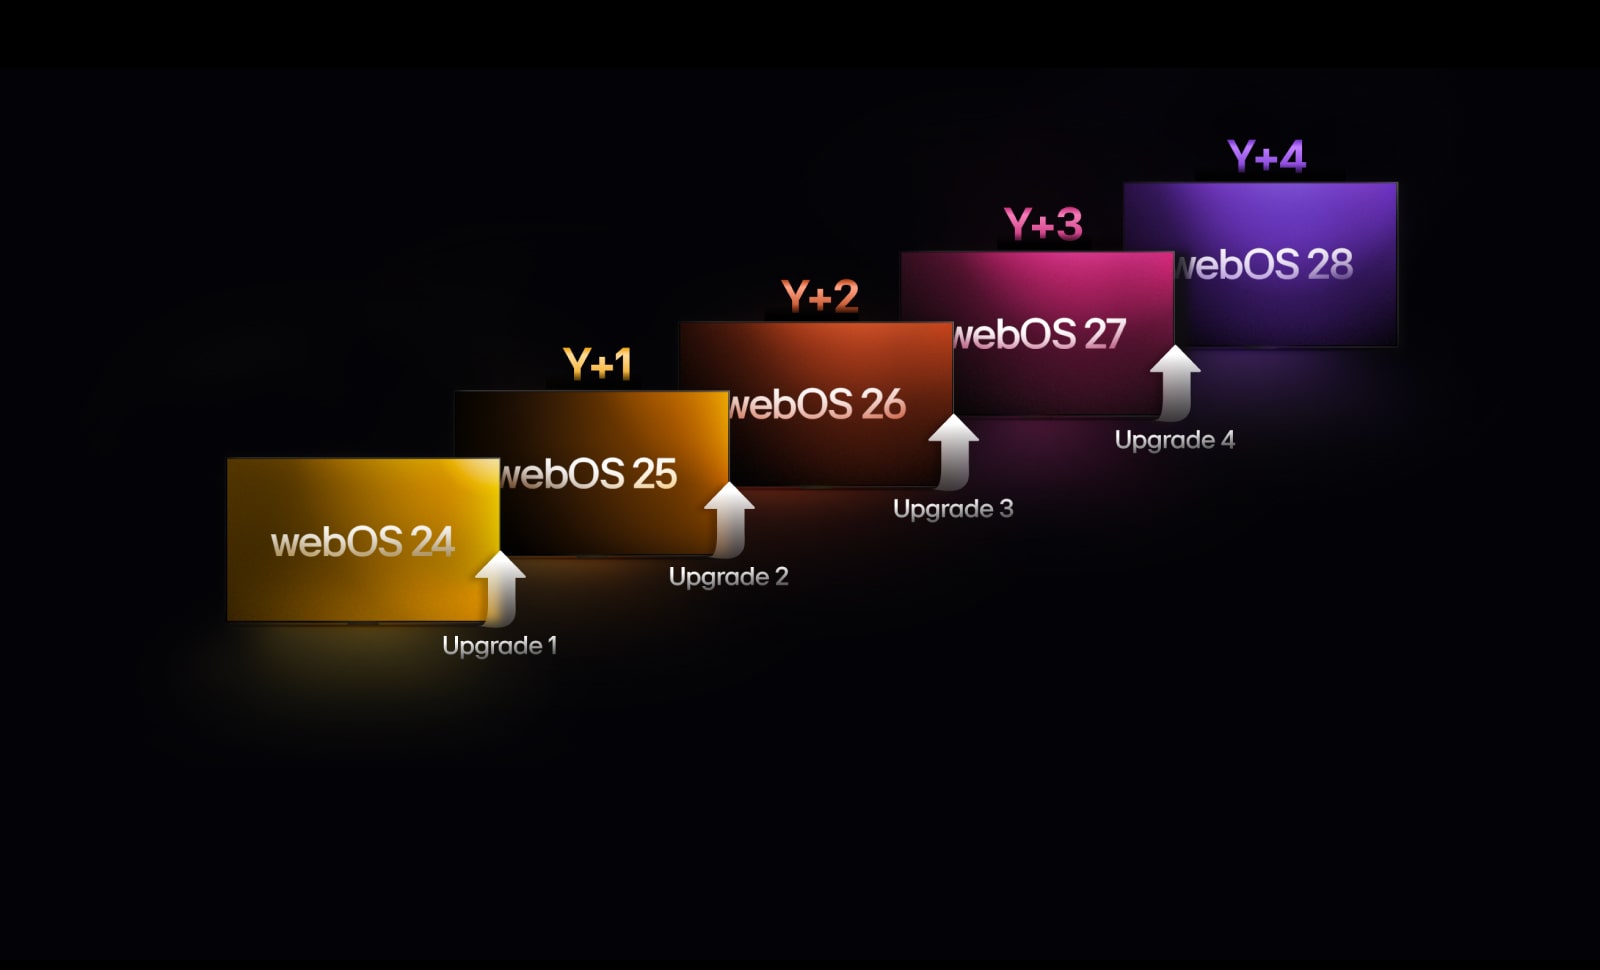 Vo vertikálnom smere je usporiadaných päť obdĺžnikov v rôznych farbách, pričom každý je označený rokom – od „webOS 24“ po „webOS 28“. Medzi obdĺžnikmi sa nachádzajú šípky smerujúce nahor označené ako „Aktualizácia 1“ až „Aktualizácia 4“.